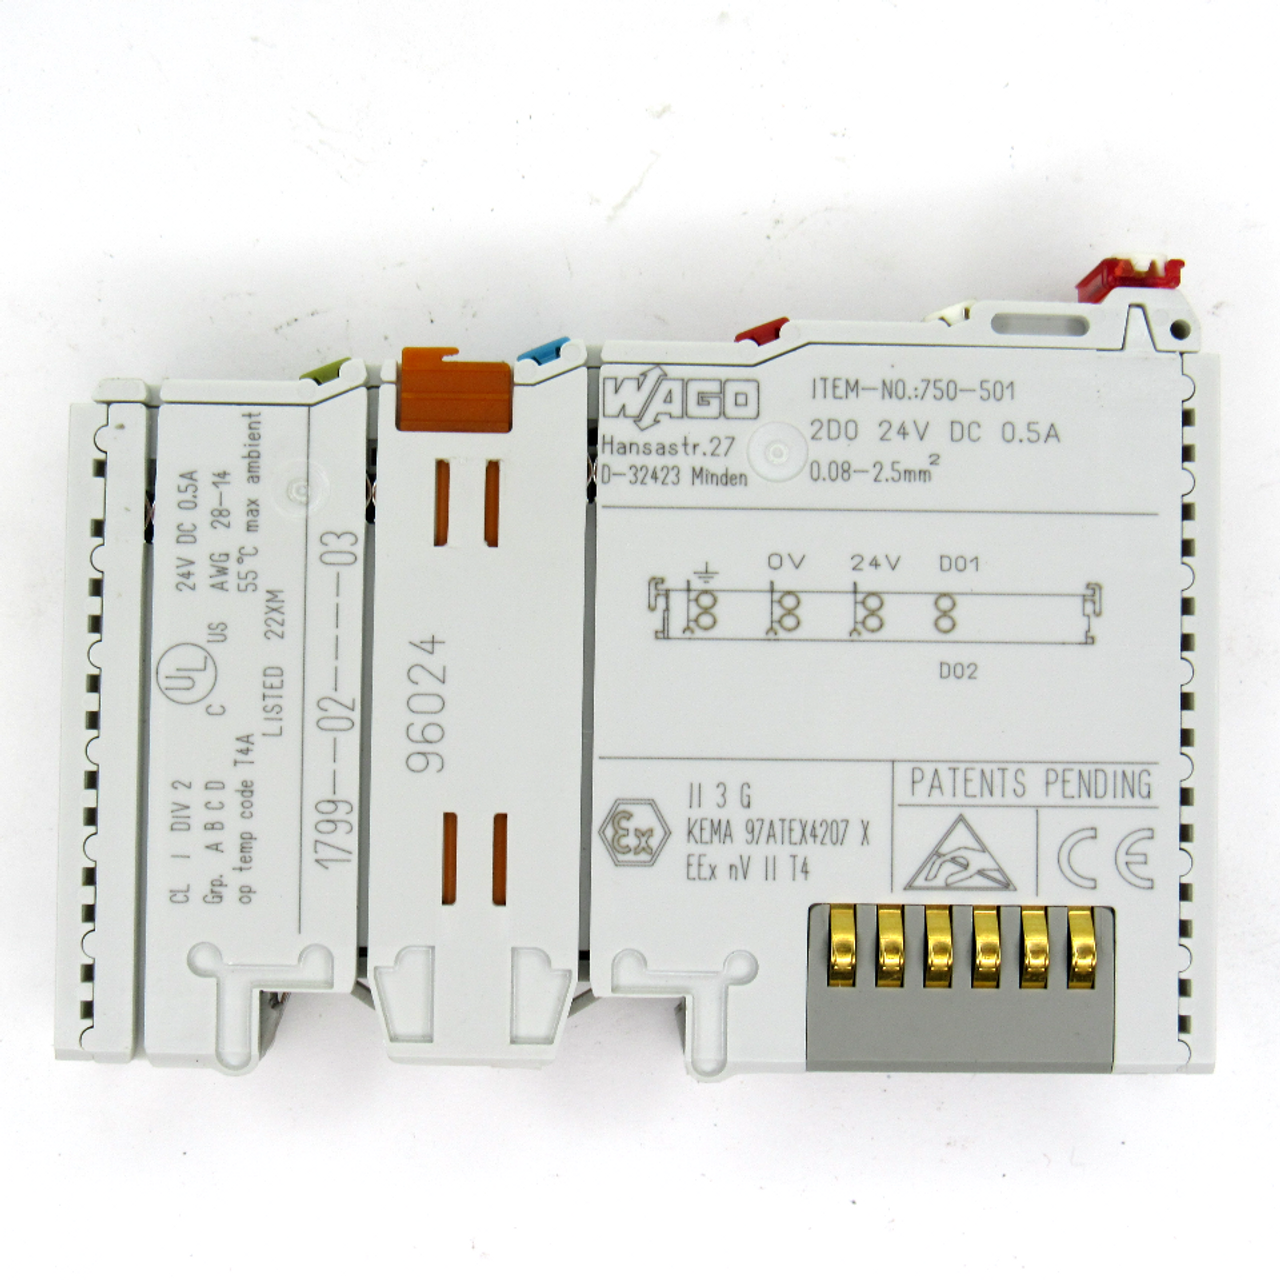 Wago 750-501 Digital Output Module, 2-Channel, 24V DC, 0.5 Amp